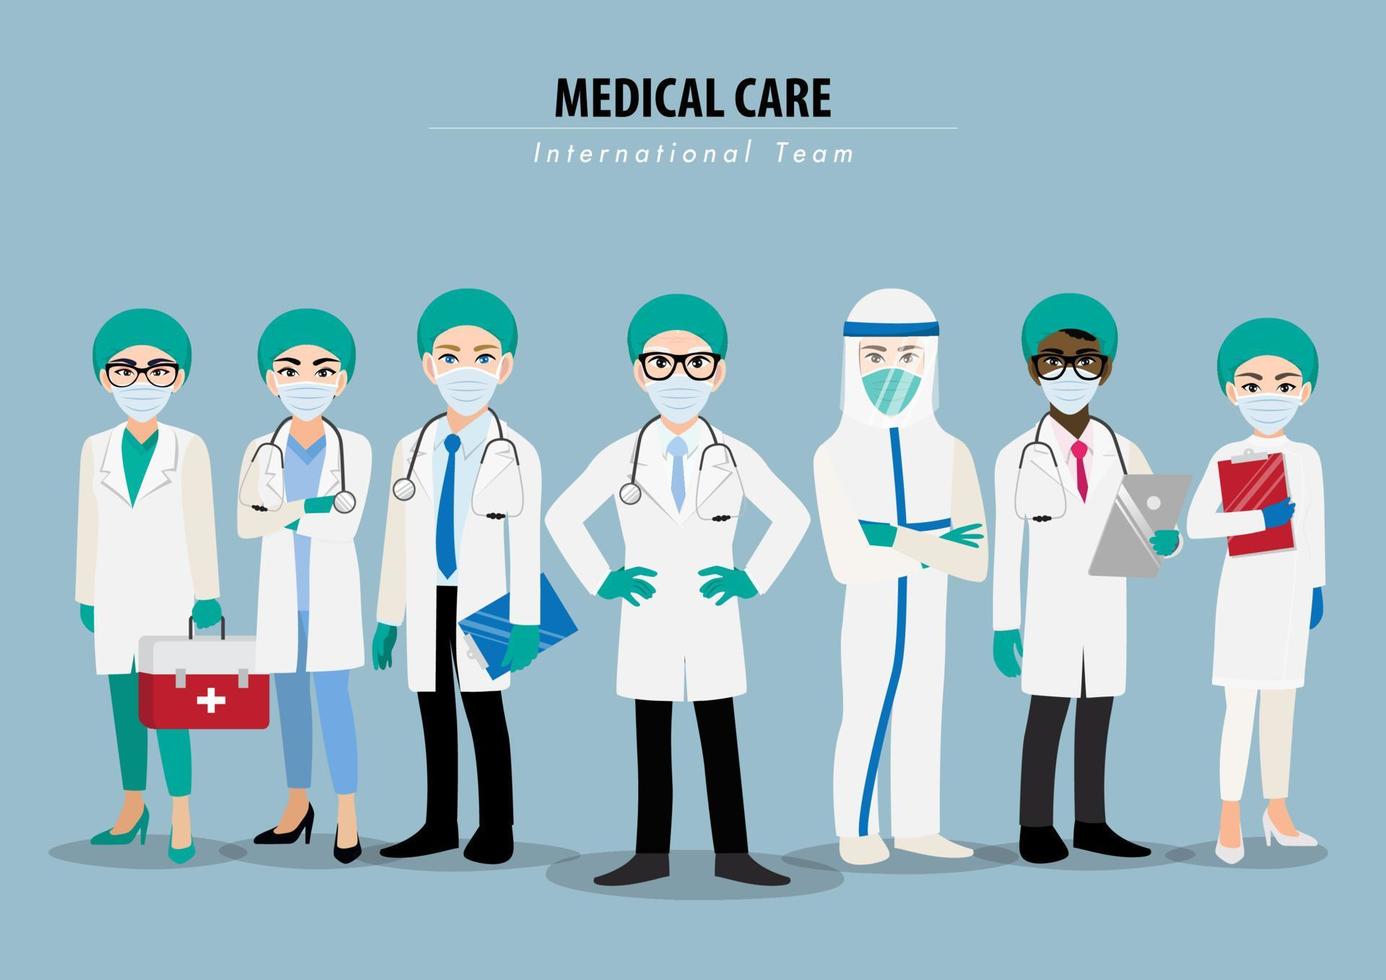 seriefigur med professionella läkare och sjuksköterskor som bär skyddssvit och står tillsammans för att bekämpa coronavirus platt ikon design vektor